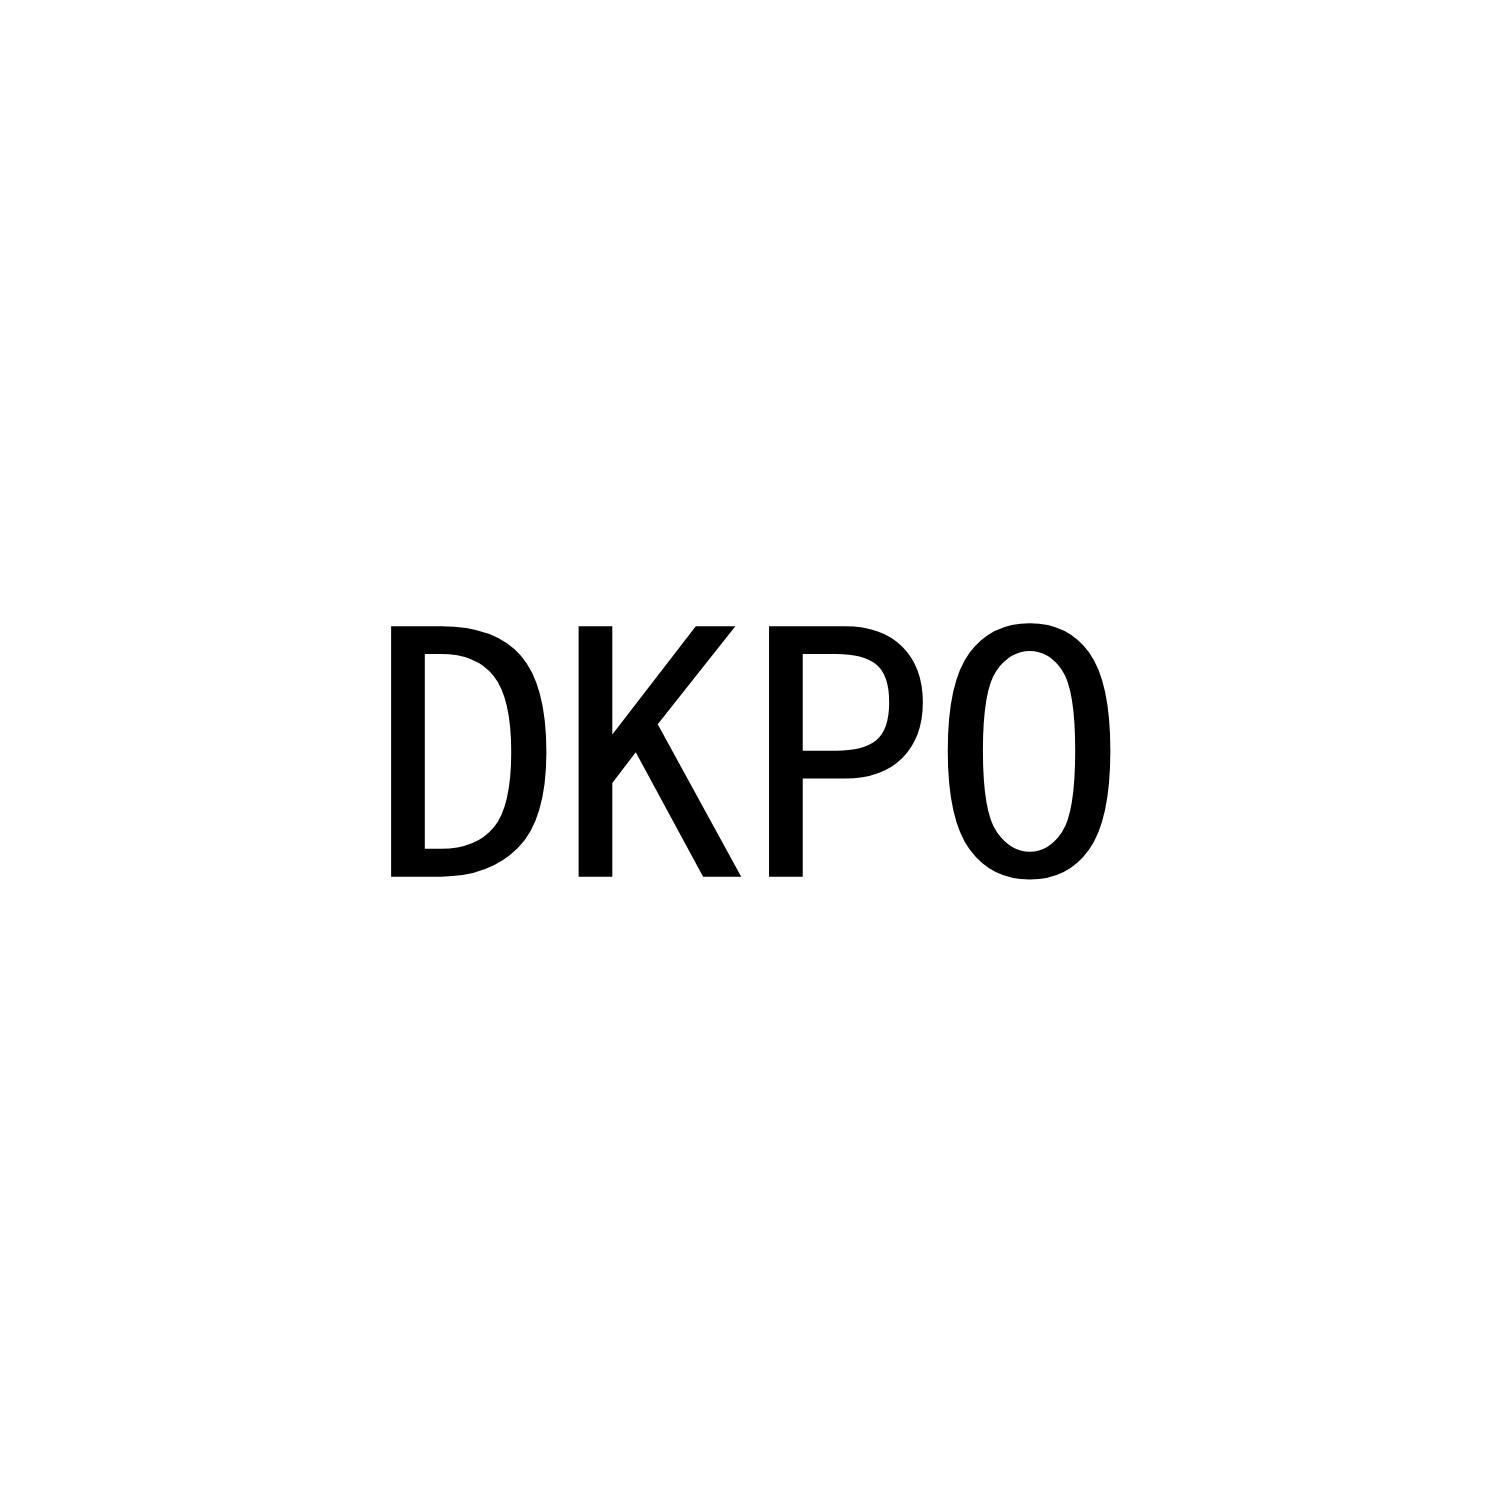 DKPO